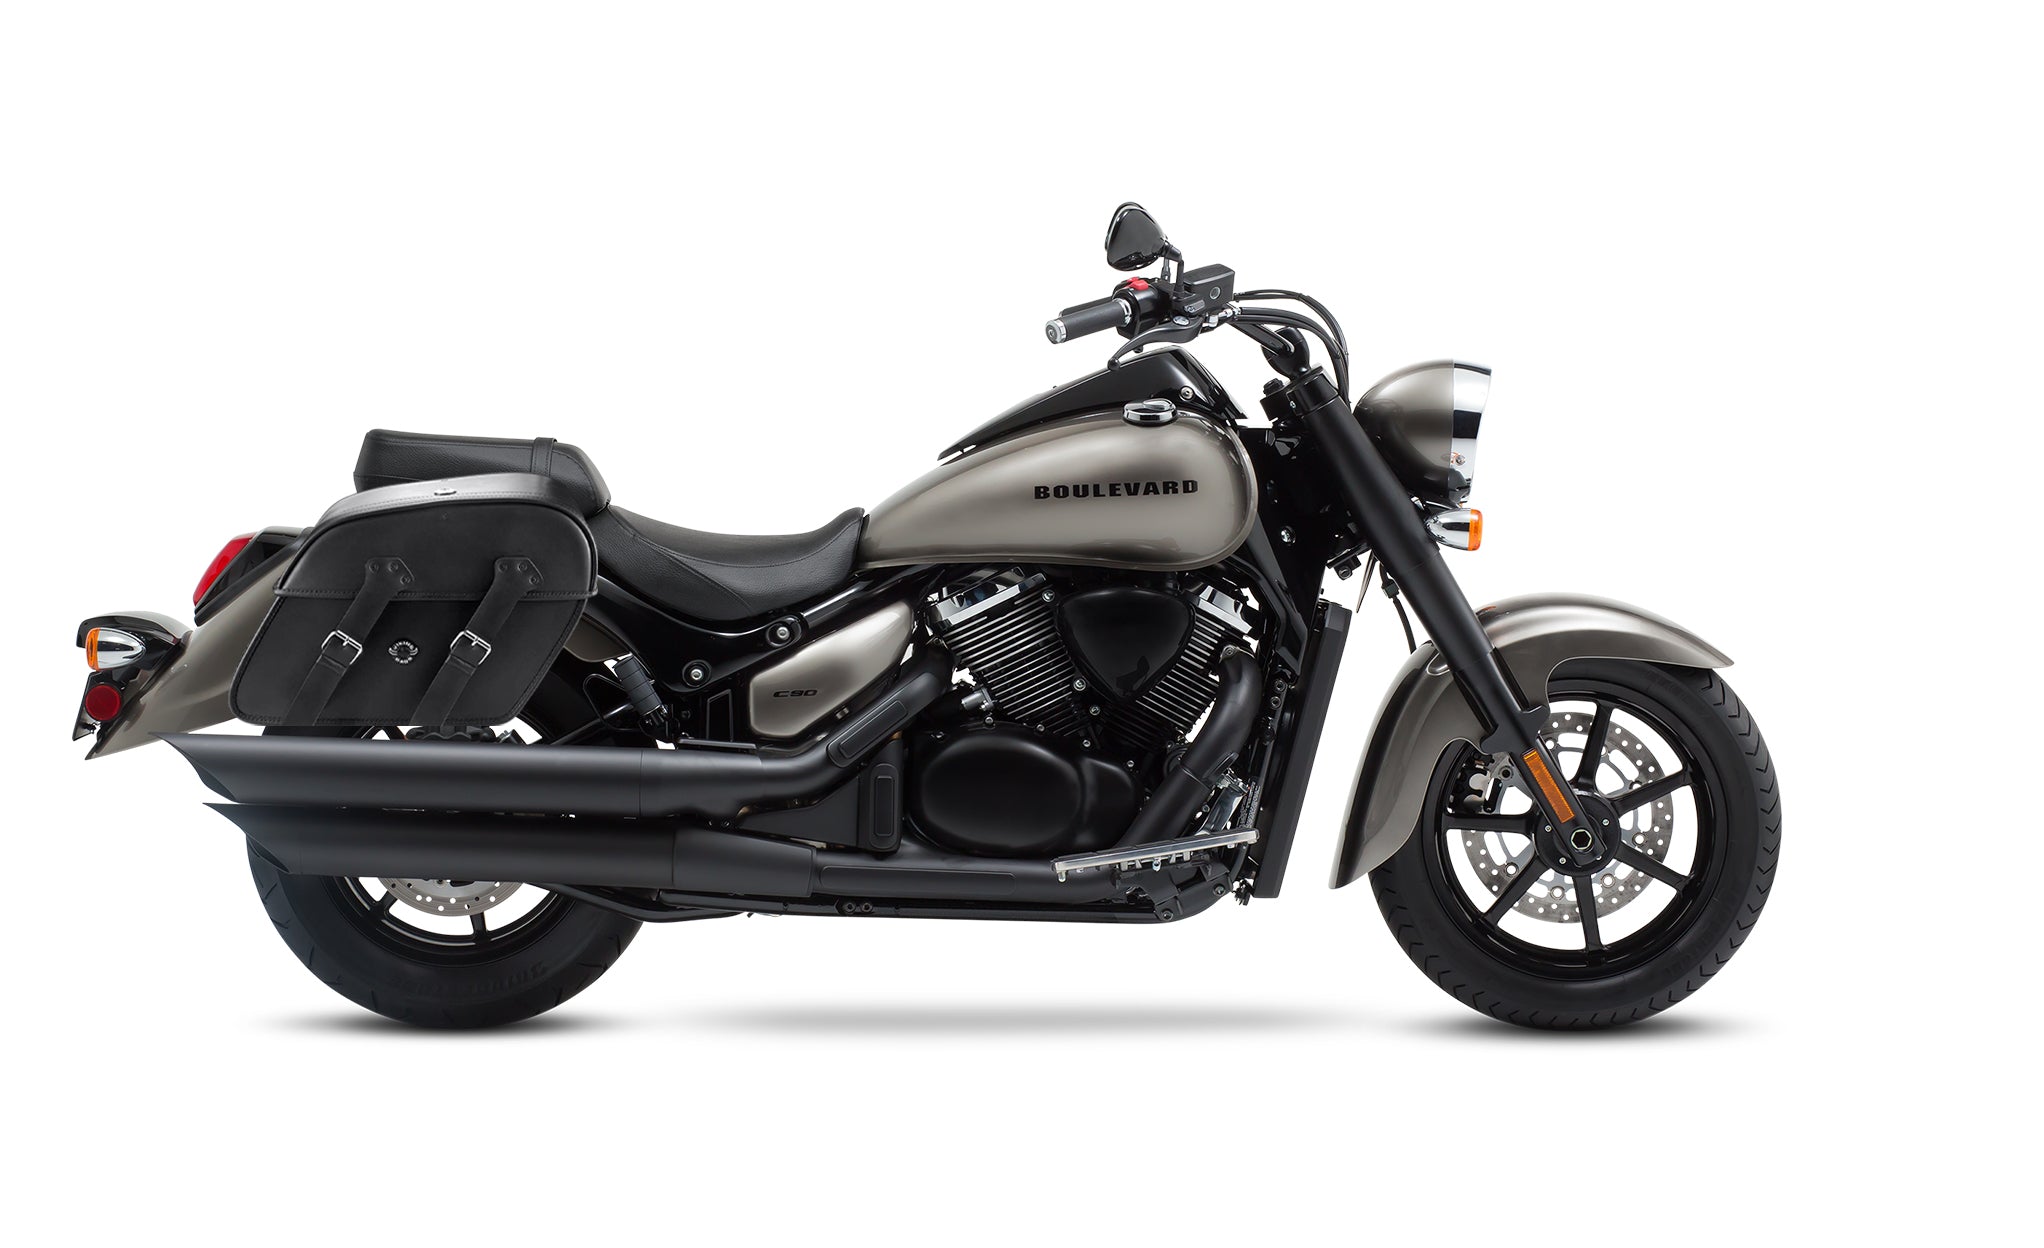 Viking Raven Large Suzuki Boulevard C90 Vl1500 Motorcycle Leather Saddlebags on Bike Photo @expand